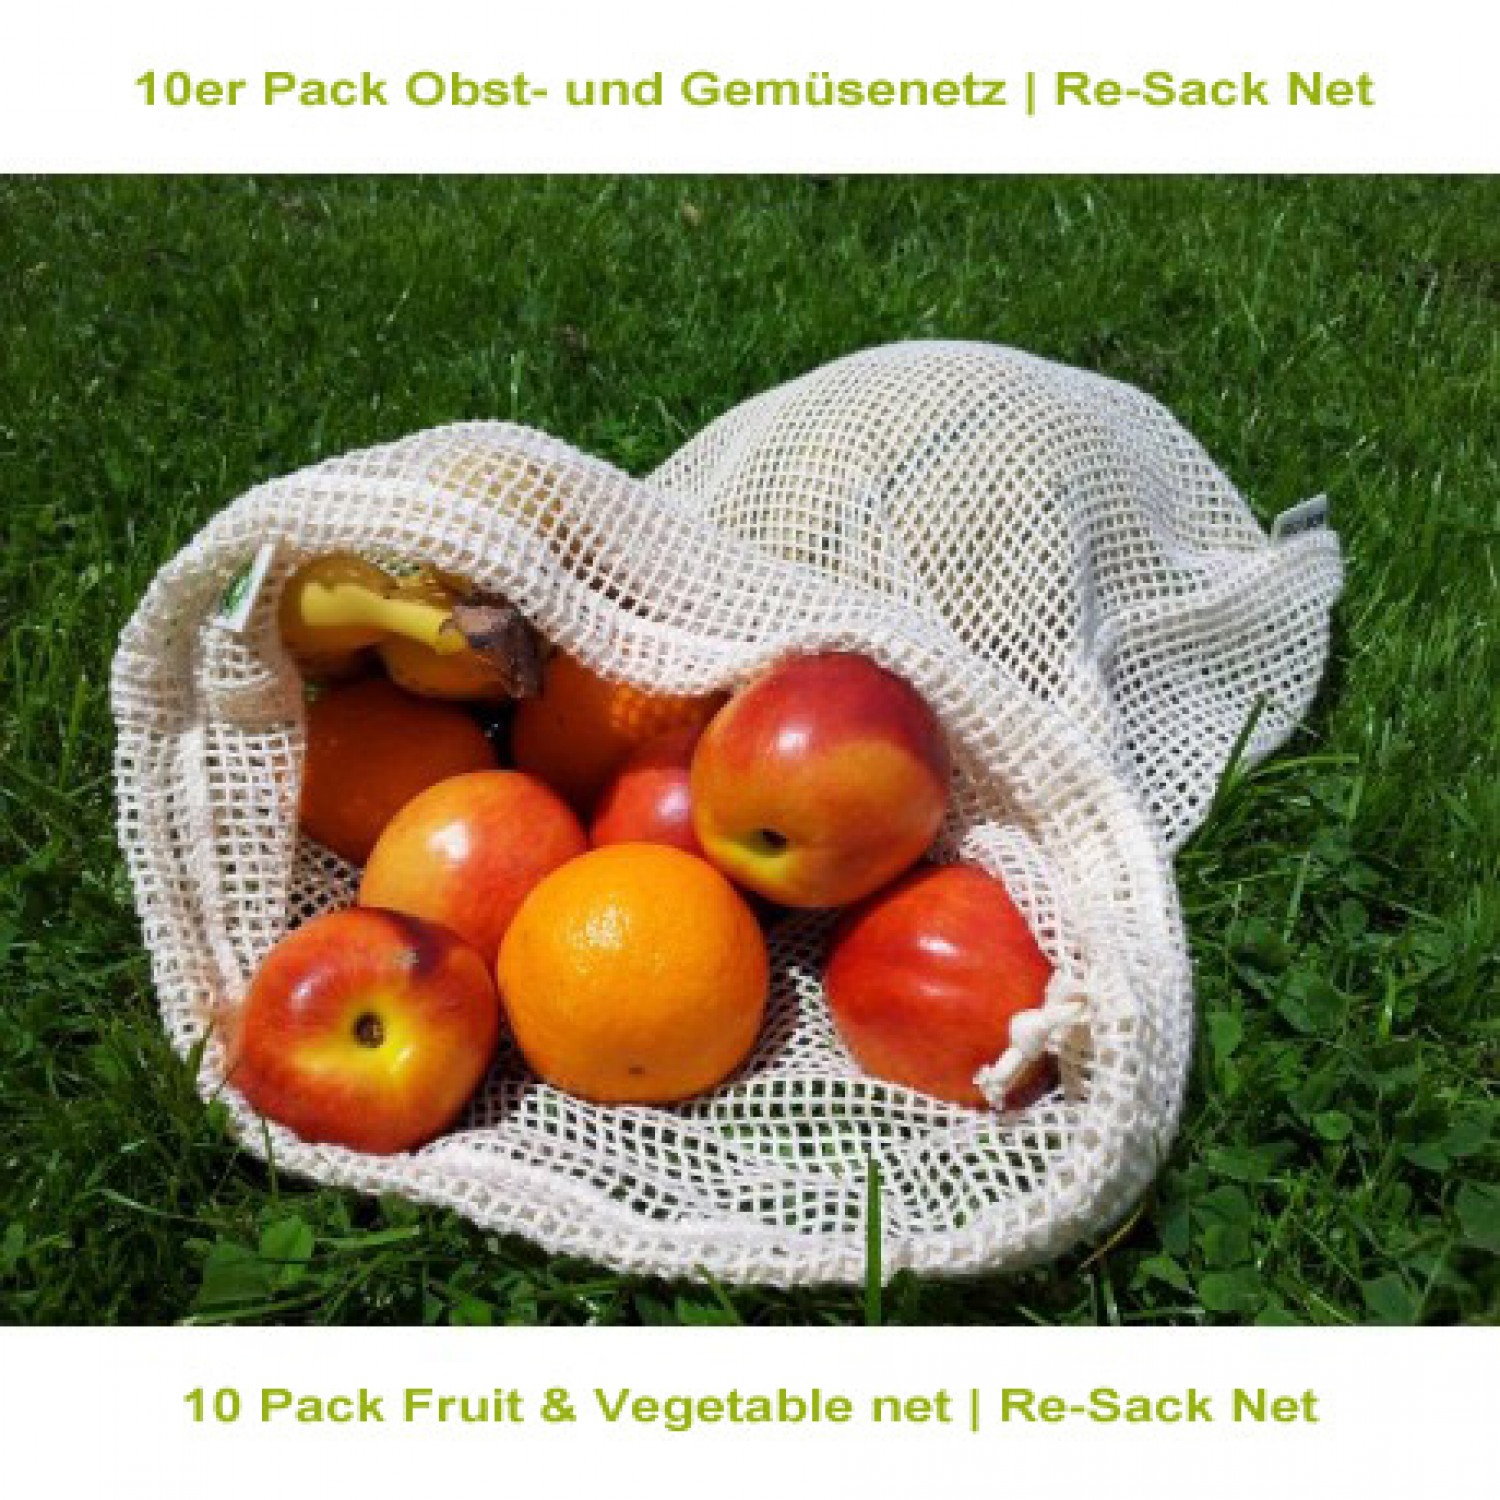 10er Pack Obst- und Gemüsenetz | Re-Sack Net